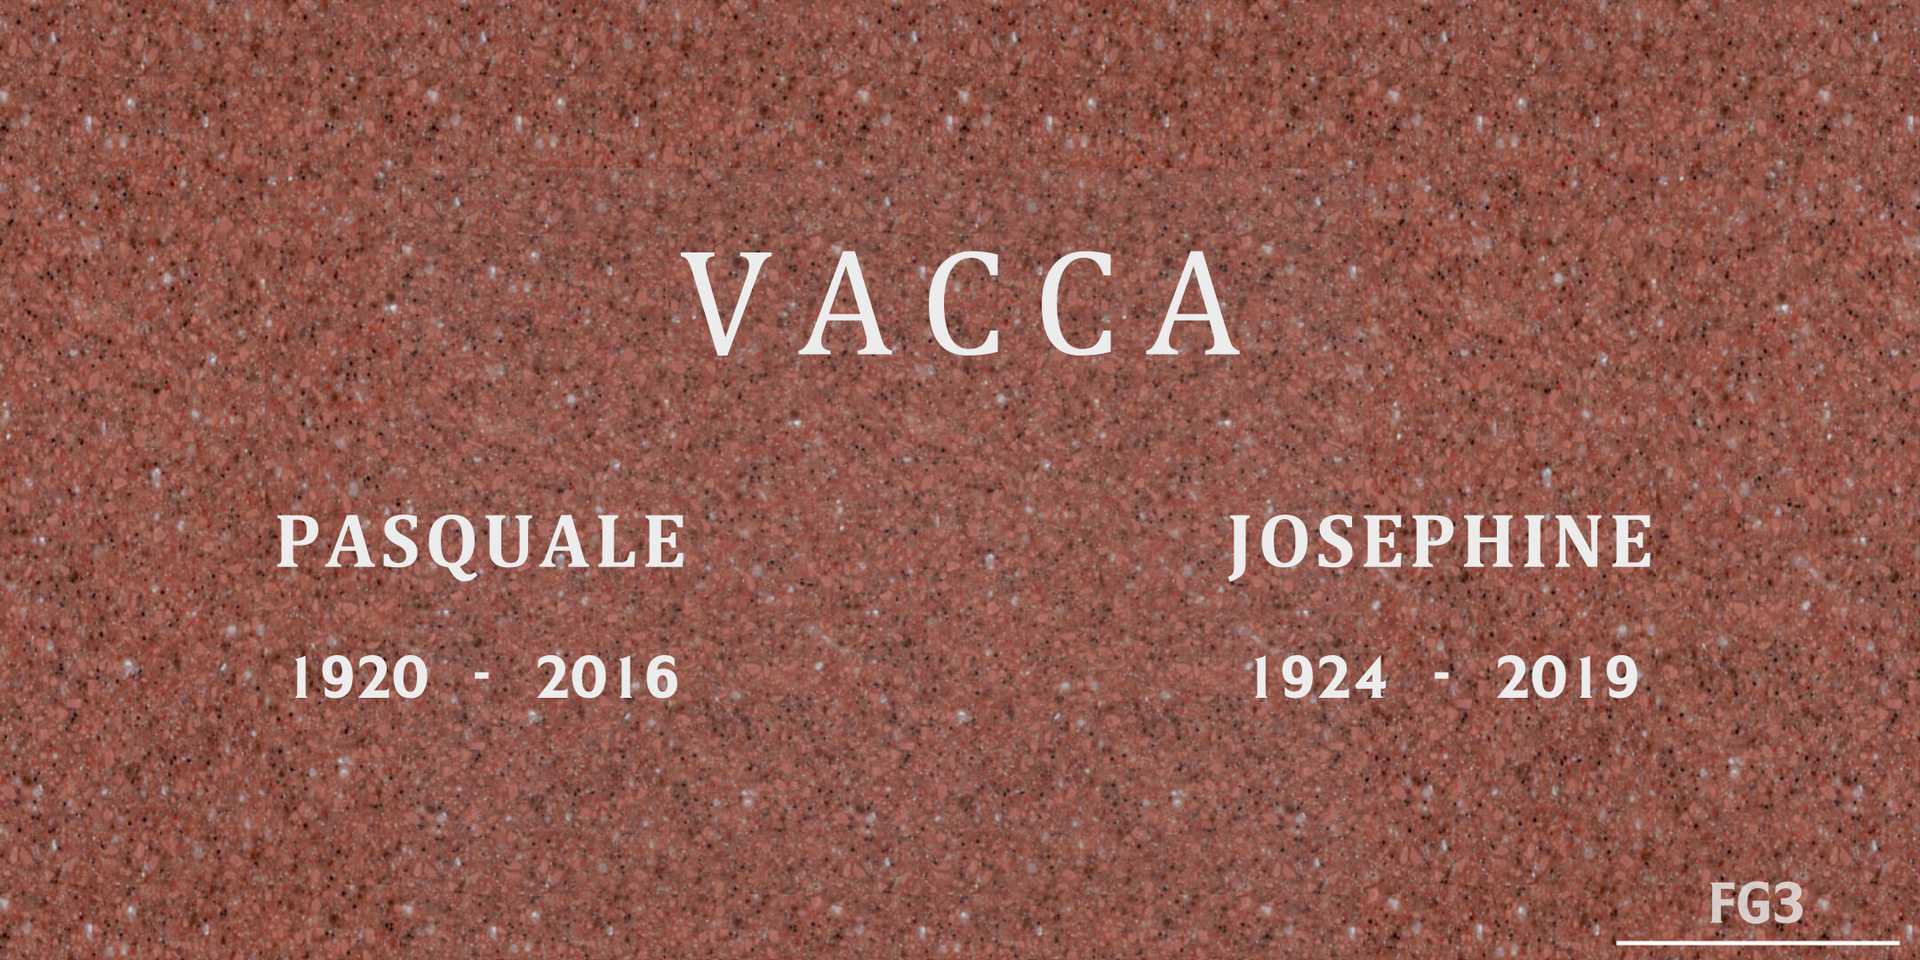 Josephine Vacca's grave